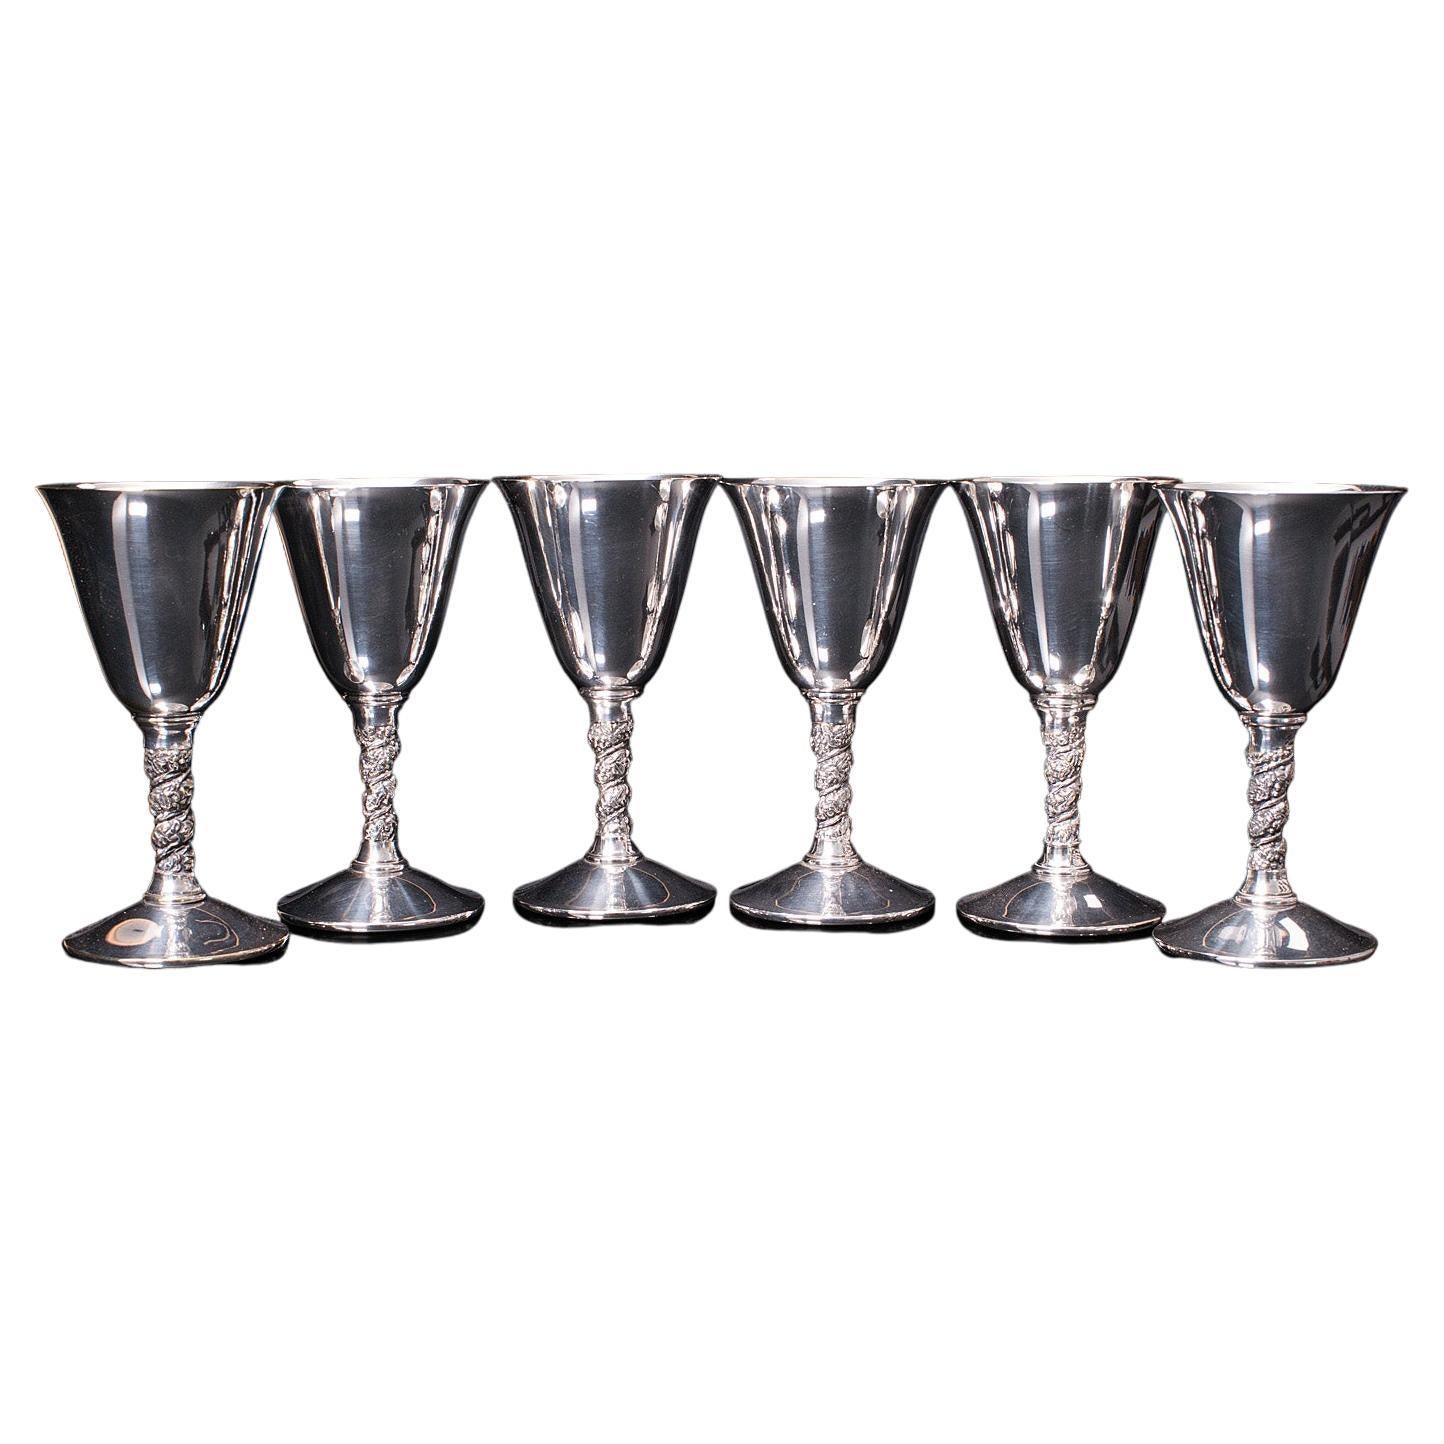 Set of 6 Vintage Sherry Goblets, Spanish, Silver Plate, Celebration Liqueur Tot